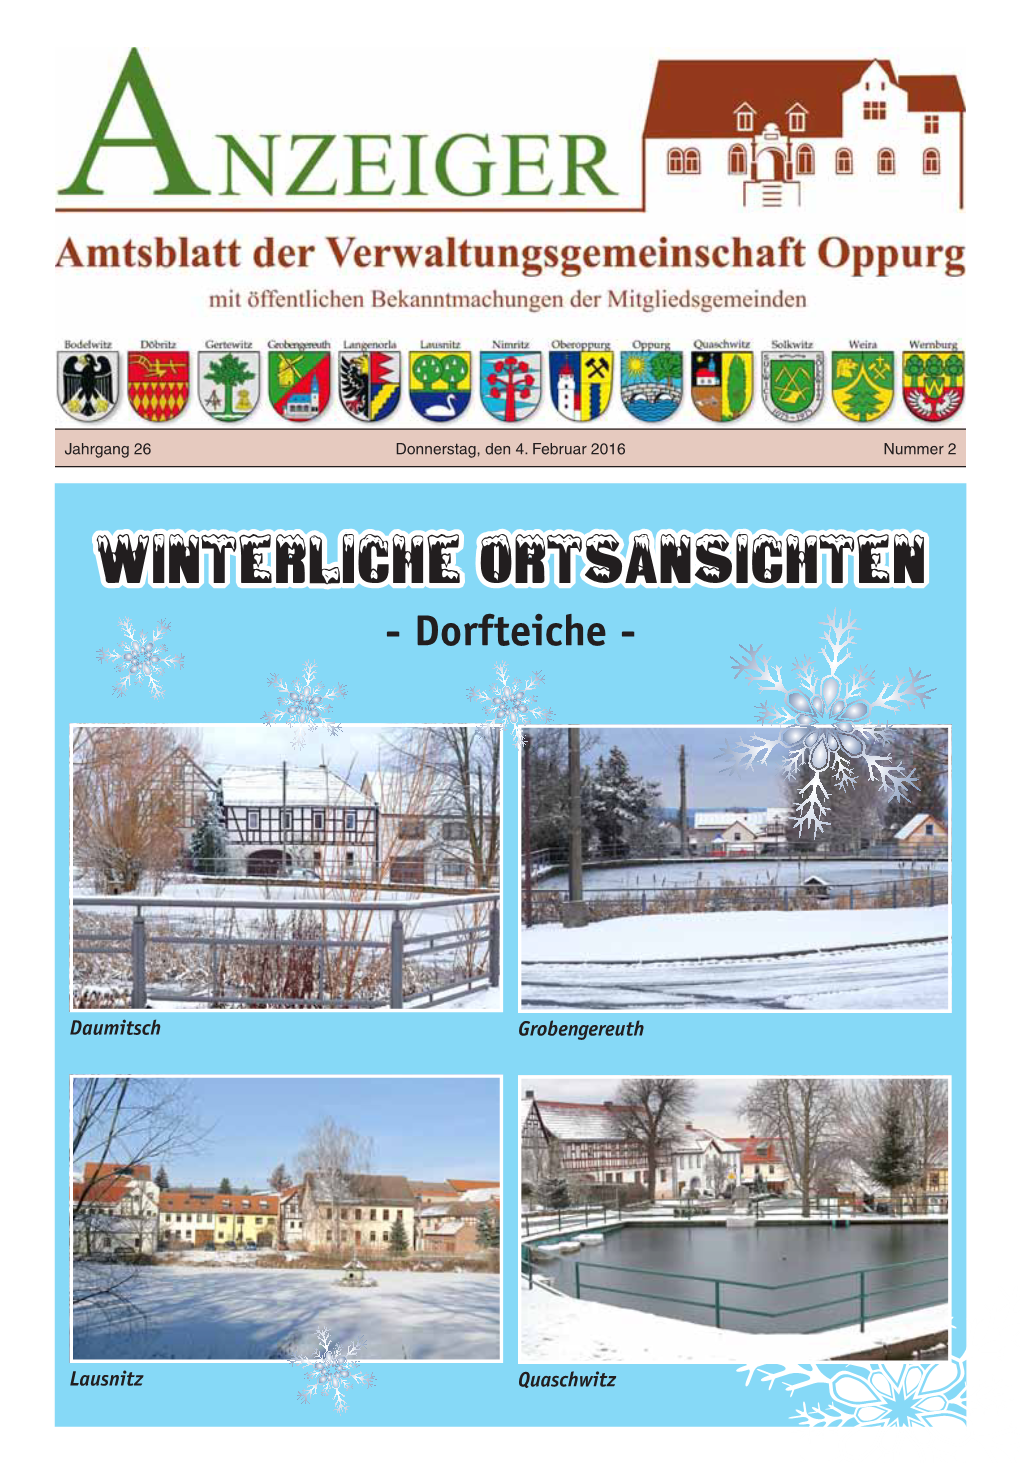 Winterliche Ortsansichten - Dorfteiche